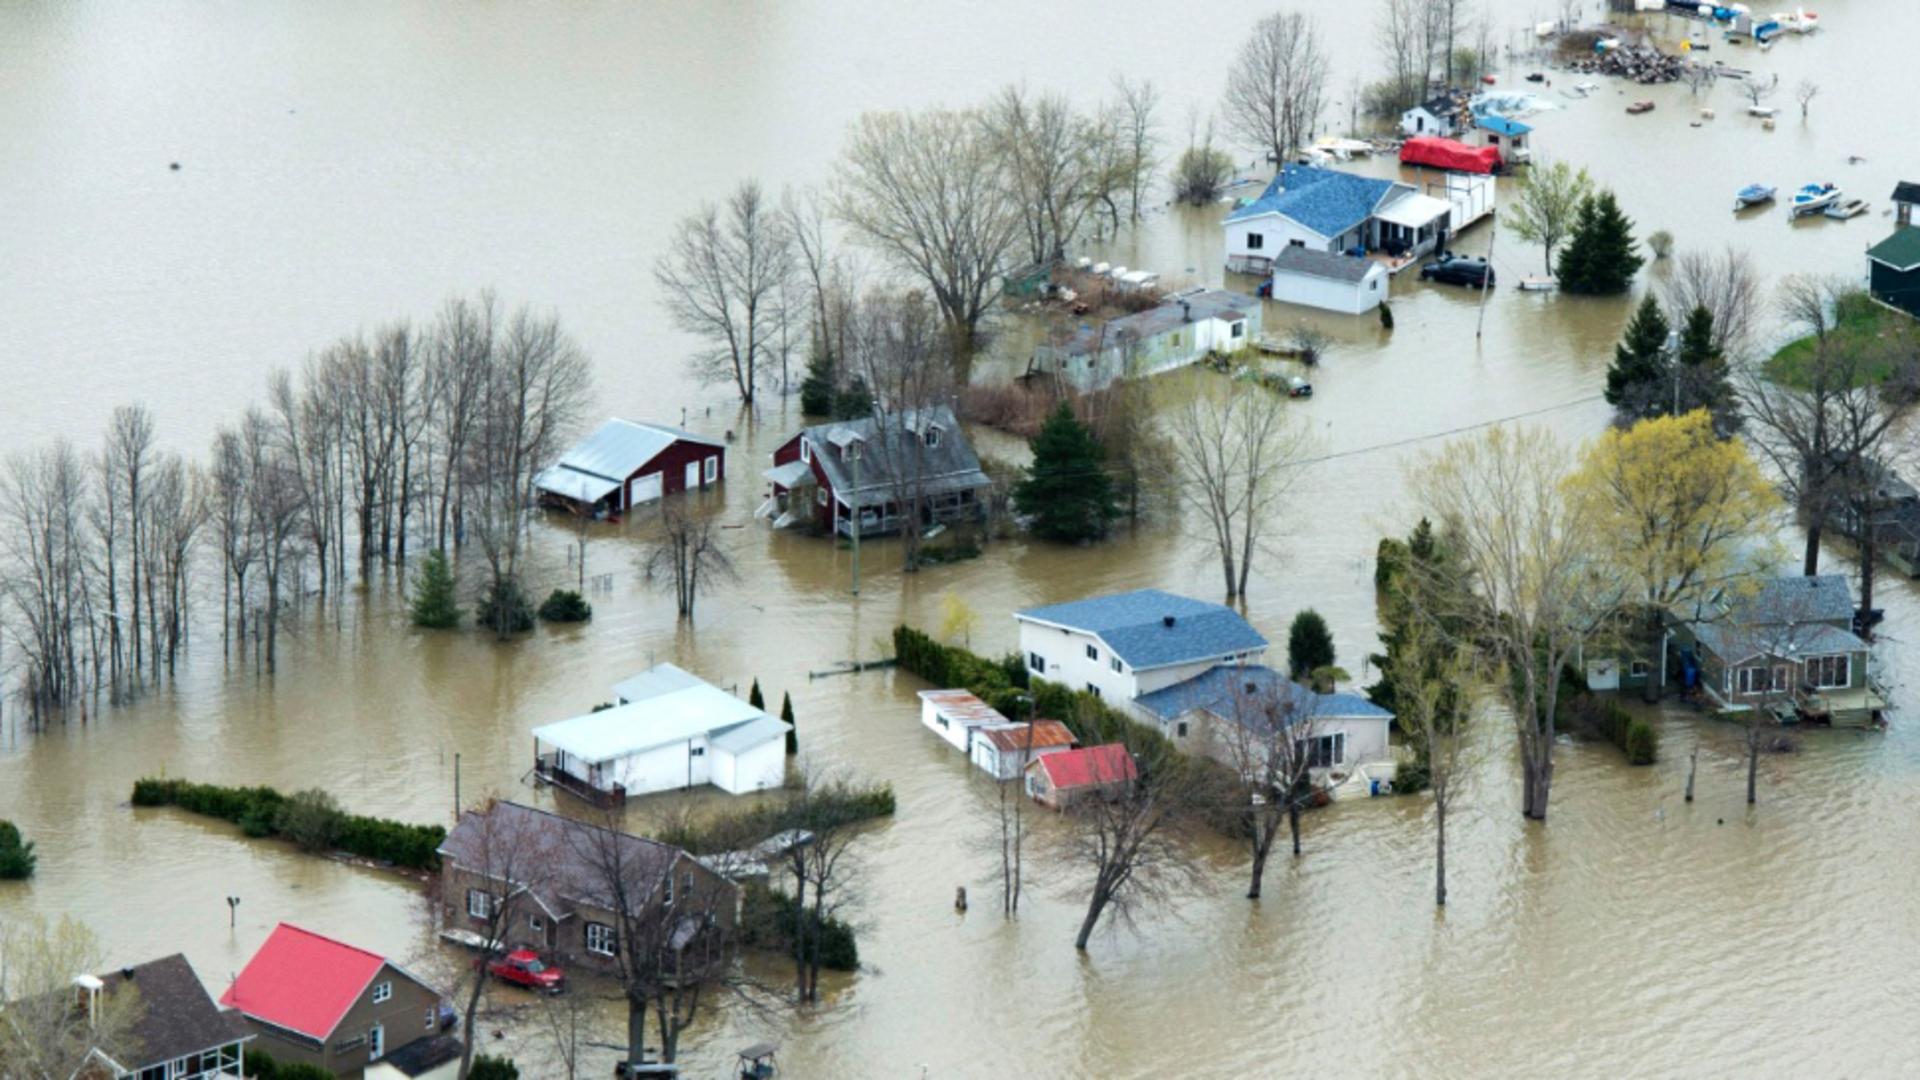 Inundatii de amploare în vestul Canadei FOTO: Twiter / MInister of Infrastructure